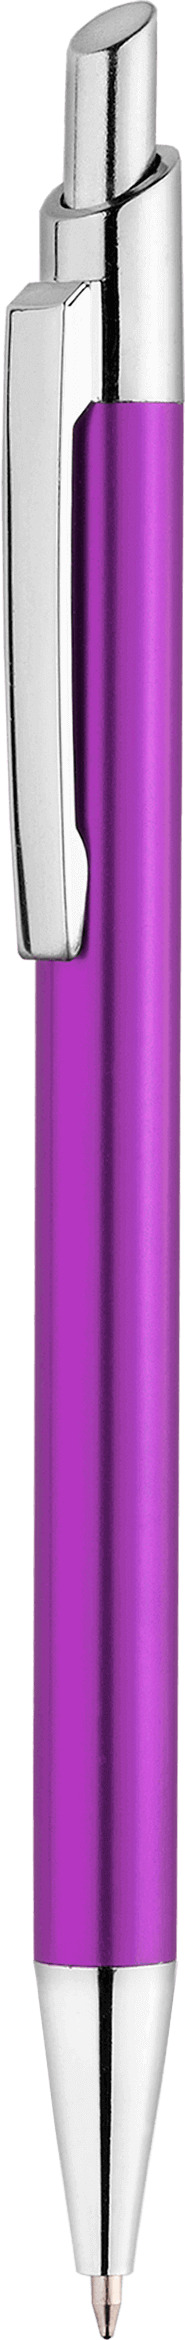 Ручка TIKKO NEW, фиолетовая